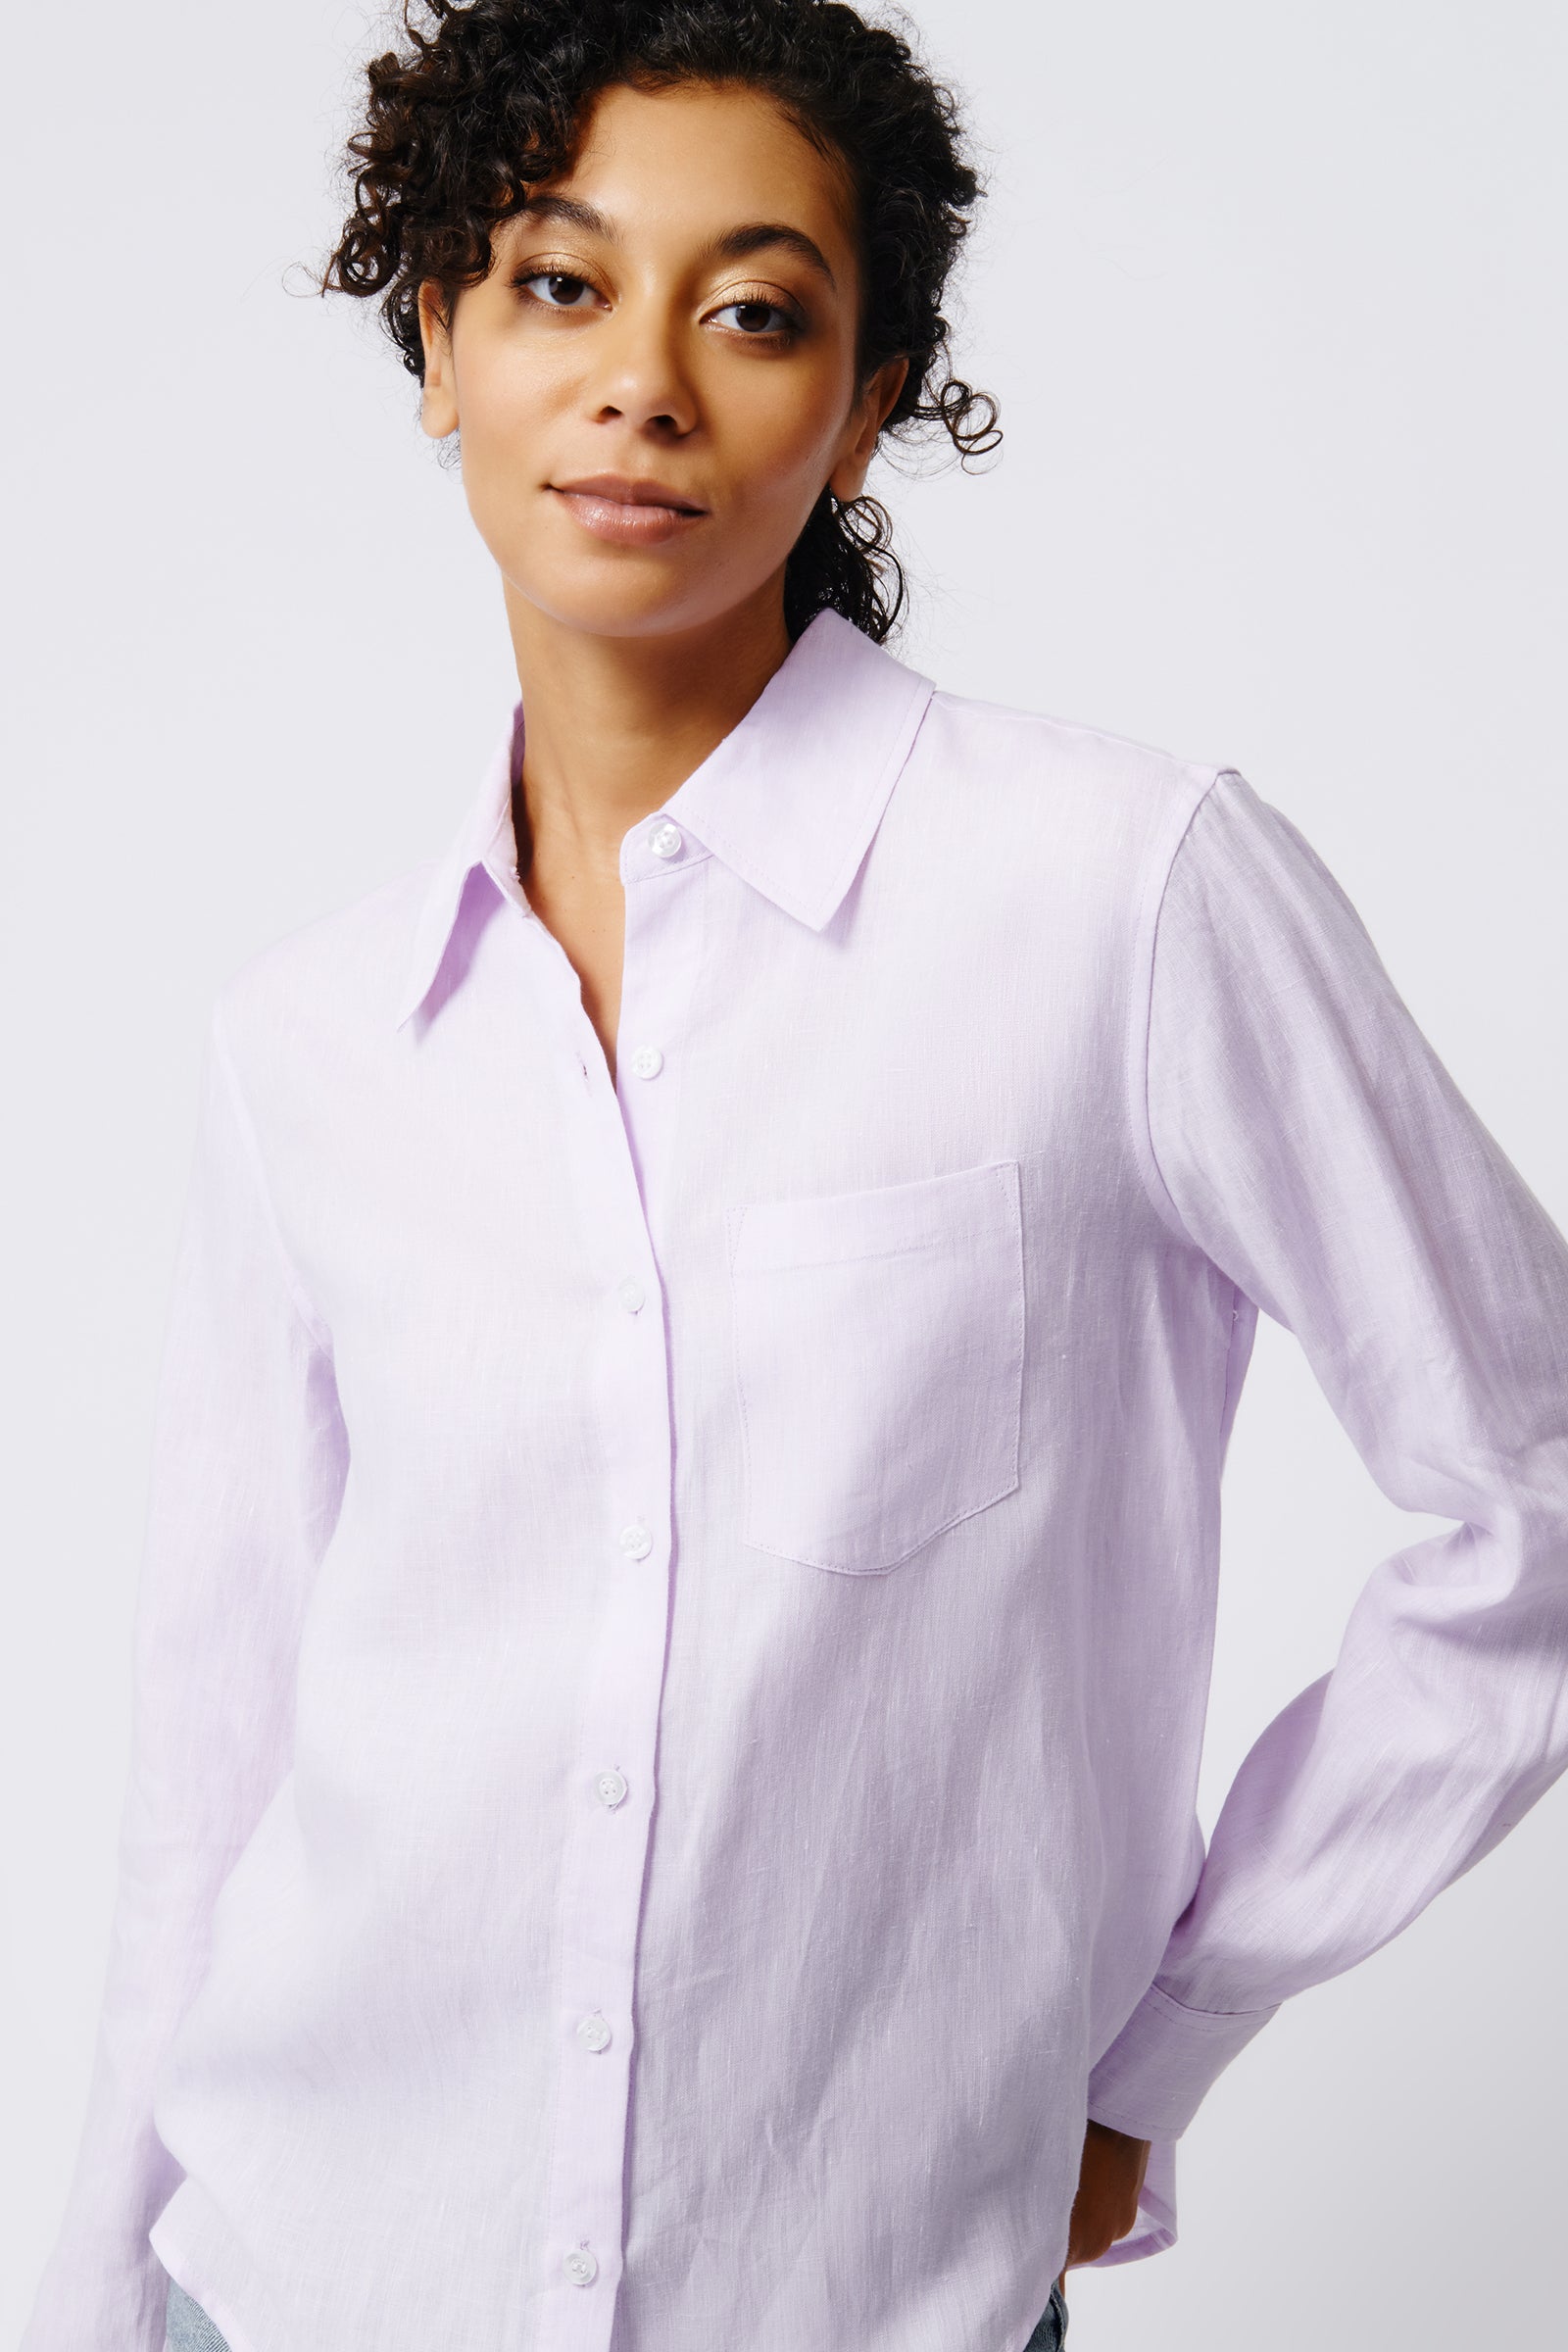 Quince Black European Linen Long Sleeve Shirt sz S Women's Button